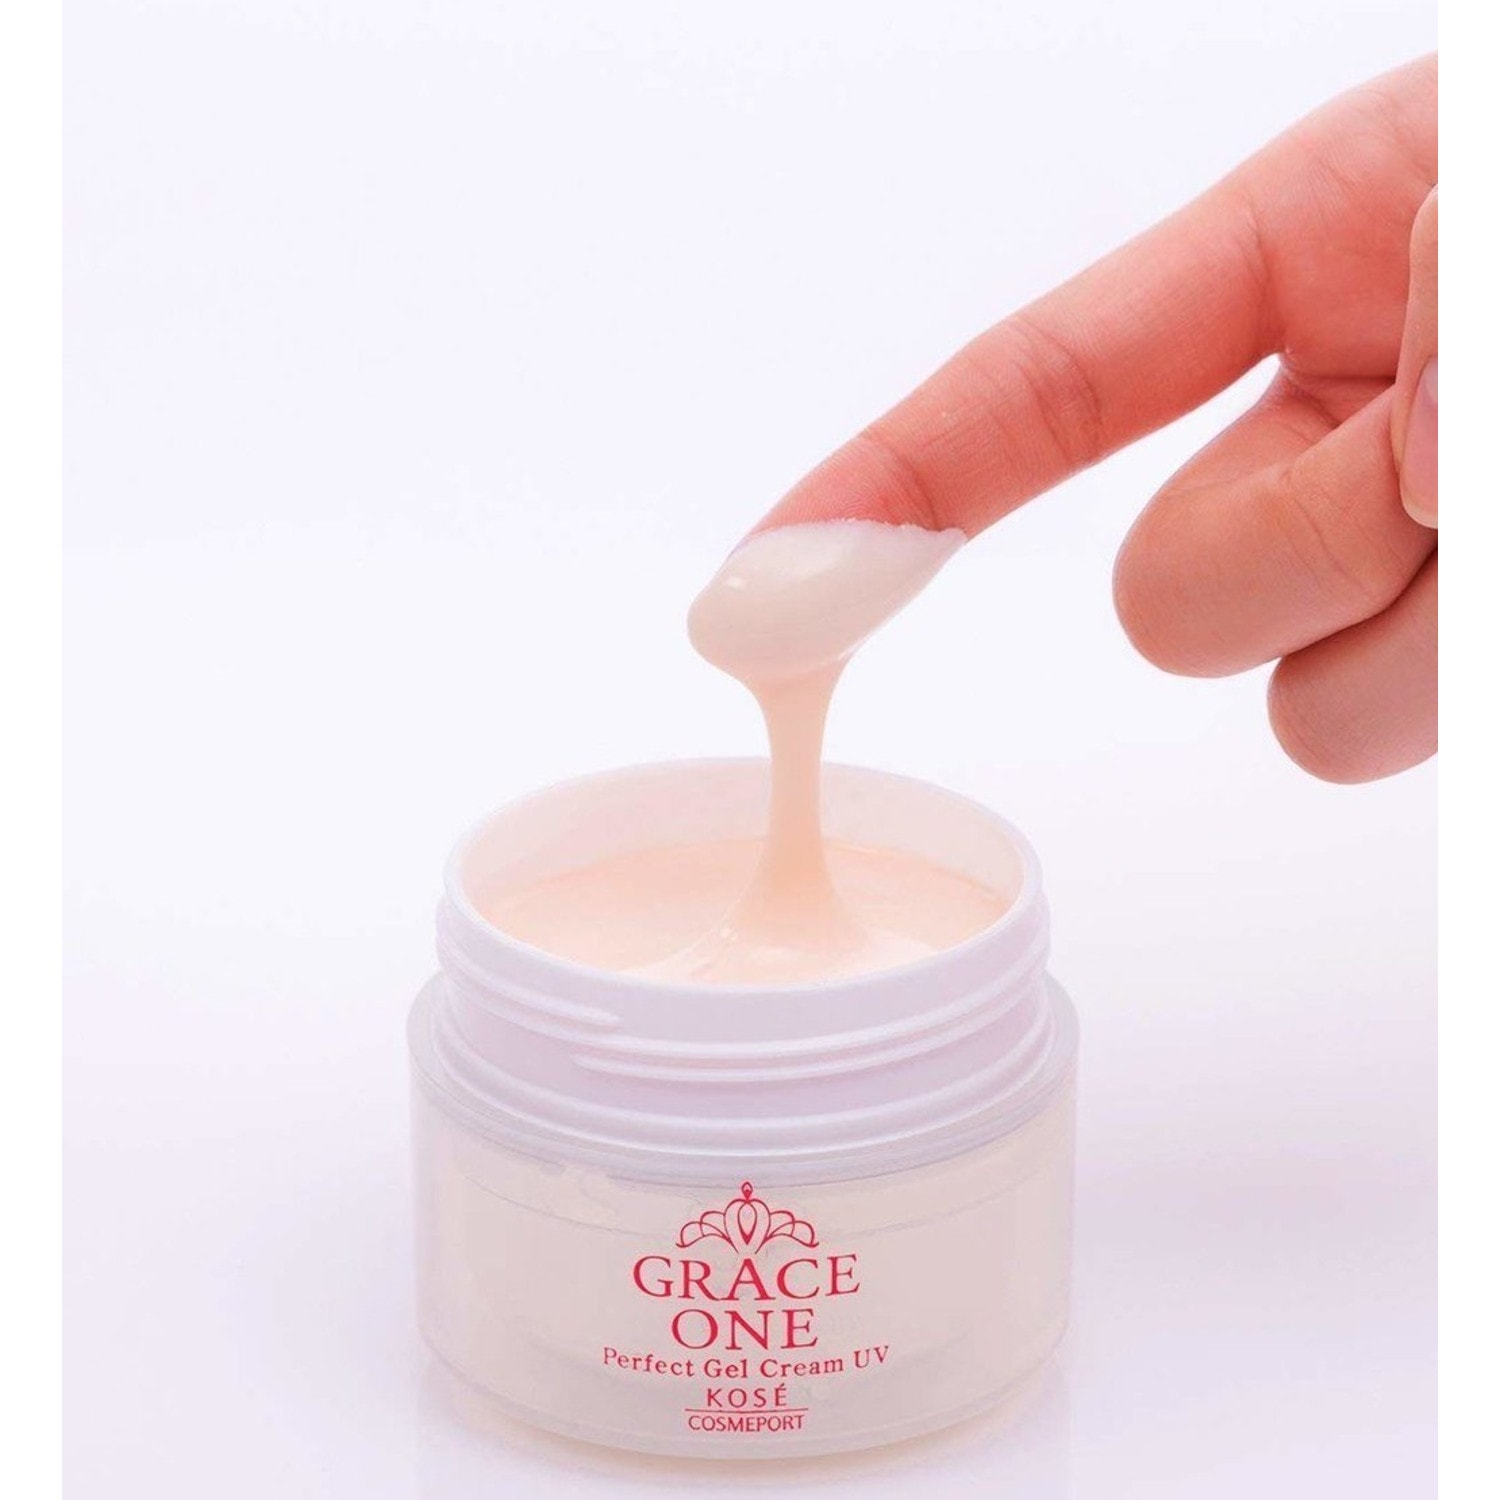  Kose Cosmeport Grace One Perfect Gel Cream UV  Гель-крем для лица  с коллагеном для кожи после 50 лет, 100г. / 386967